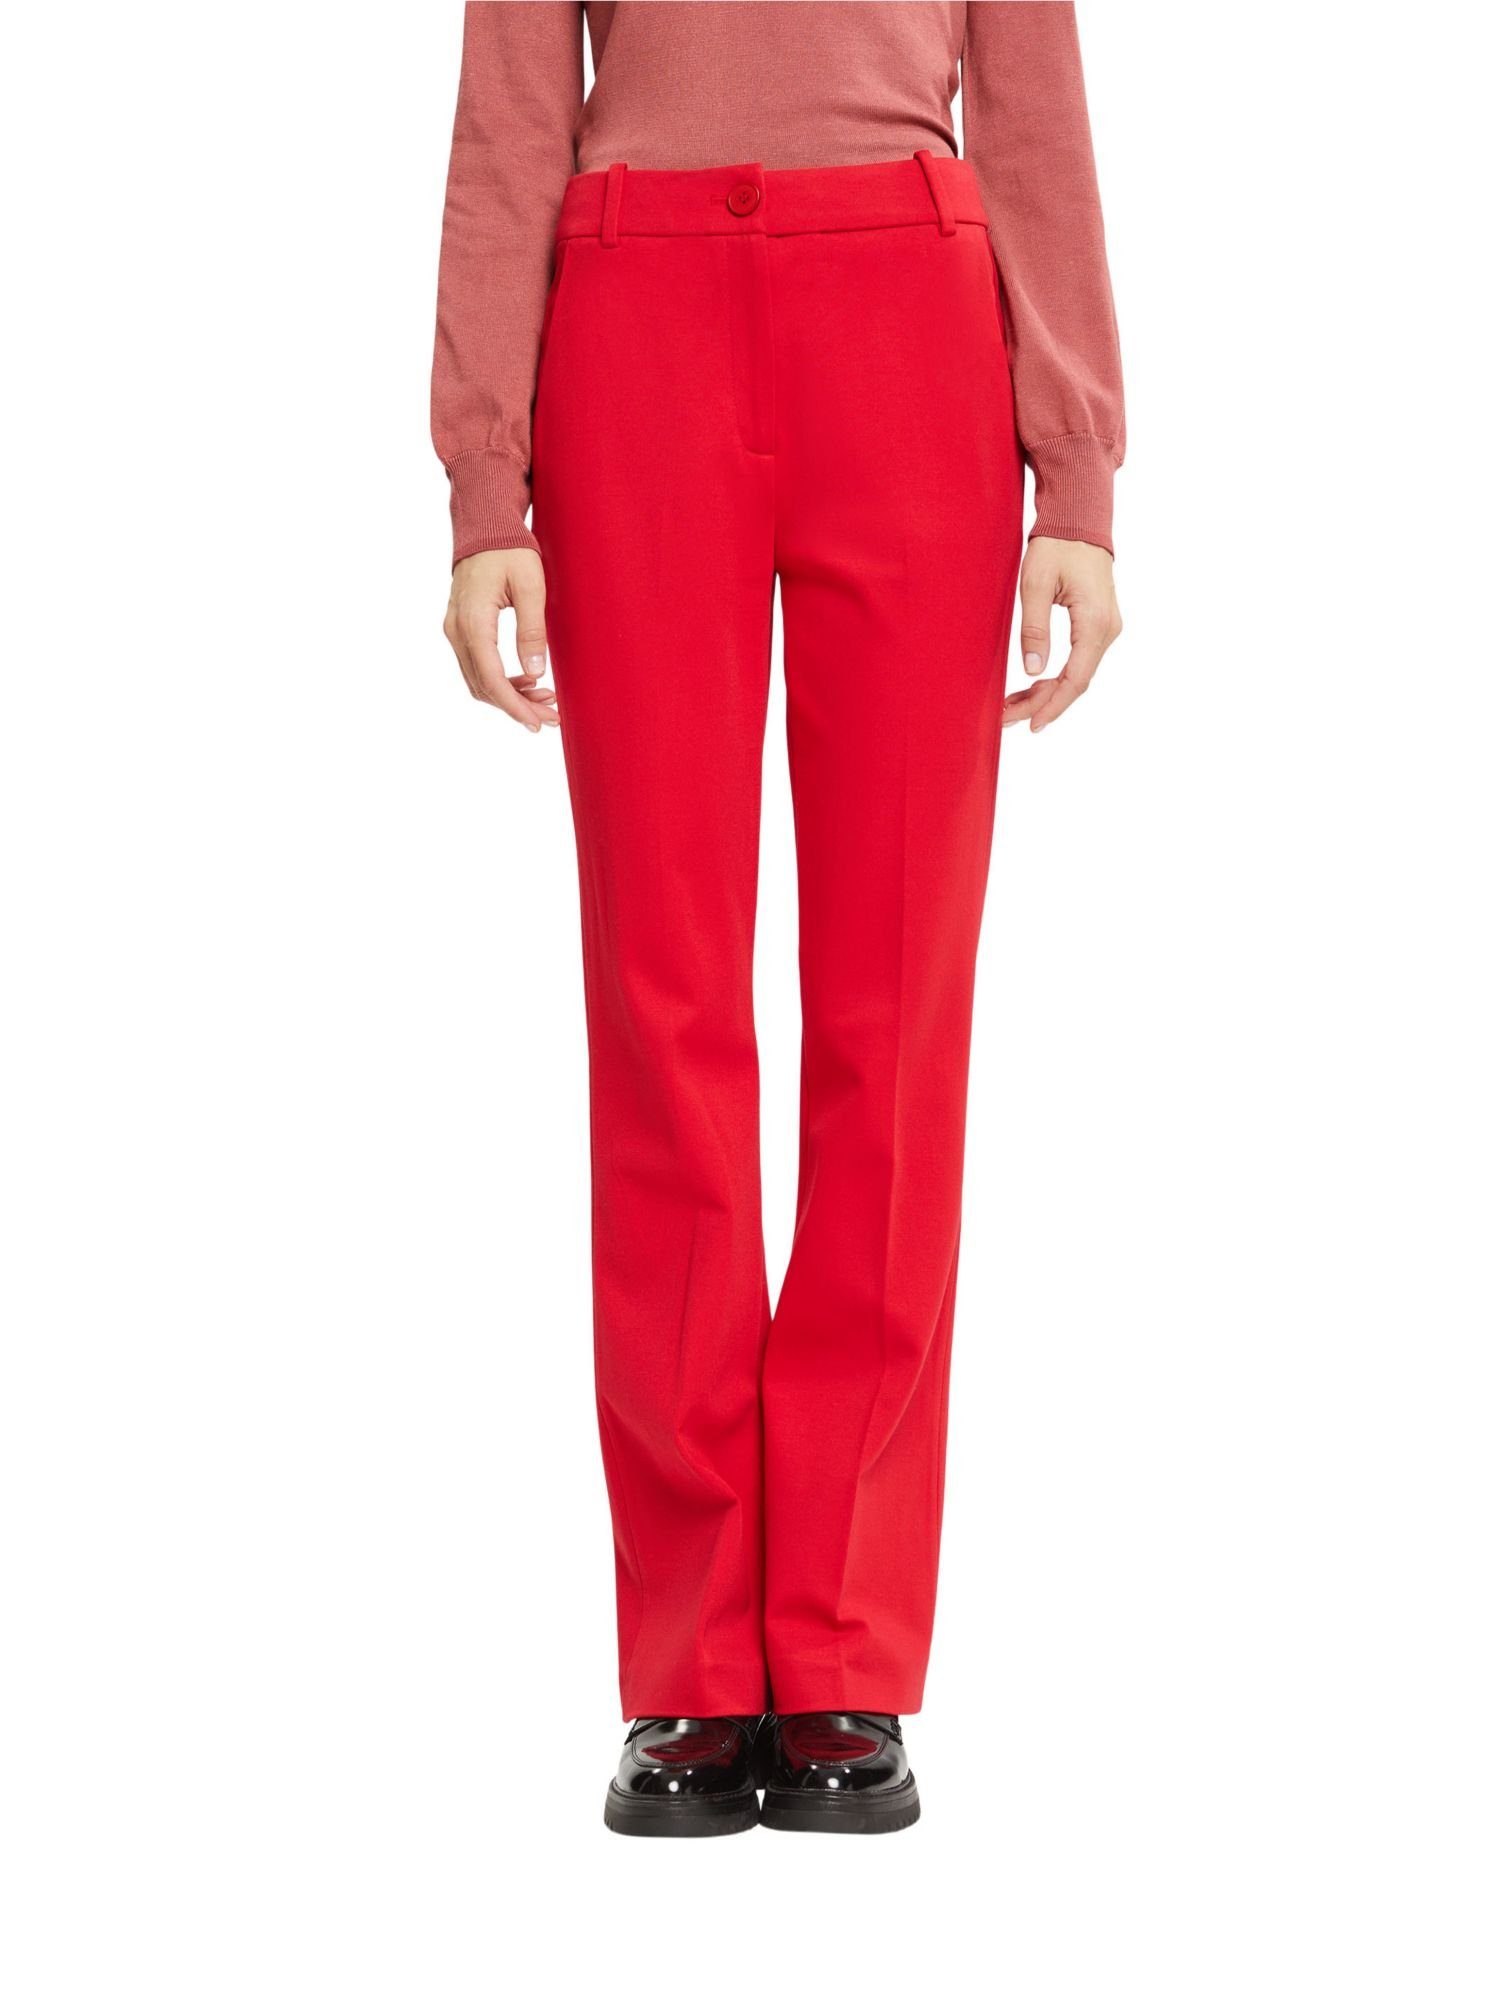 Collection Bund Stoffhose Stretchige Pants RED DARK Bootcut mit hohem Esprit